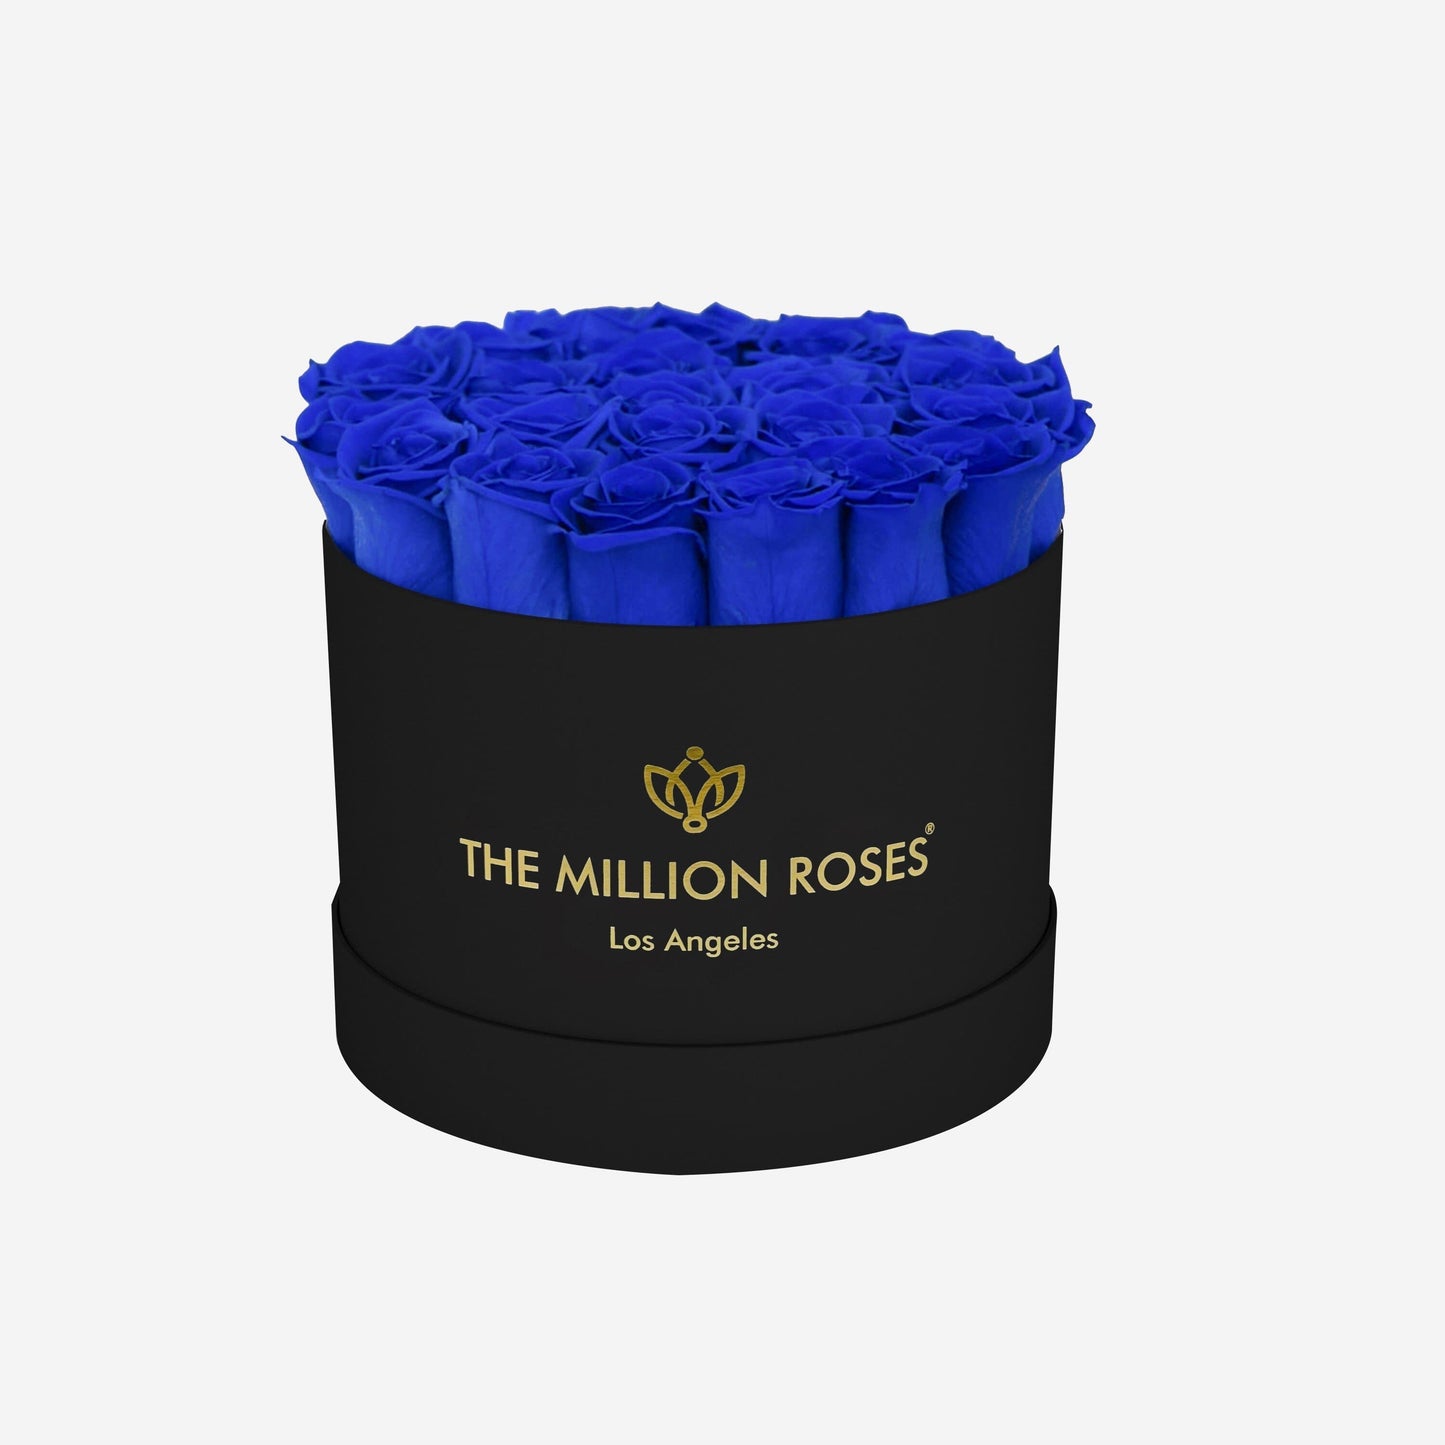 Classic Black Box | Royal Blue Roses - The Million Roses